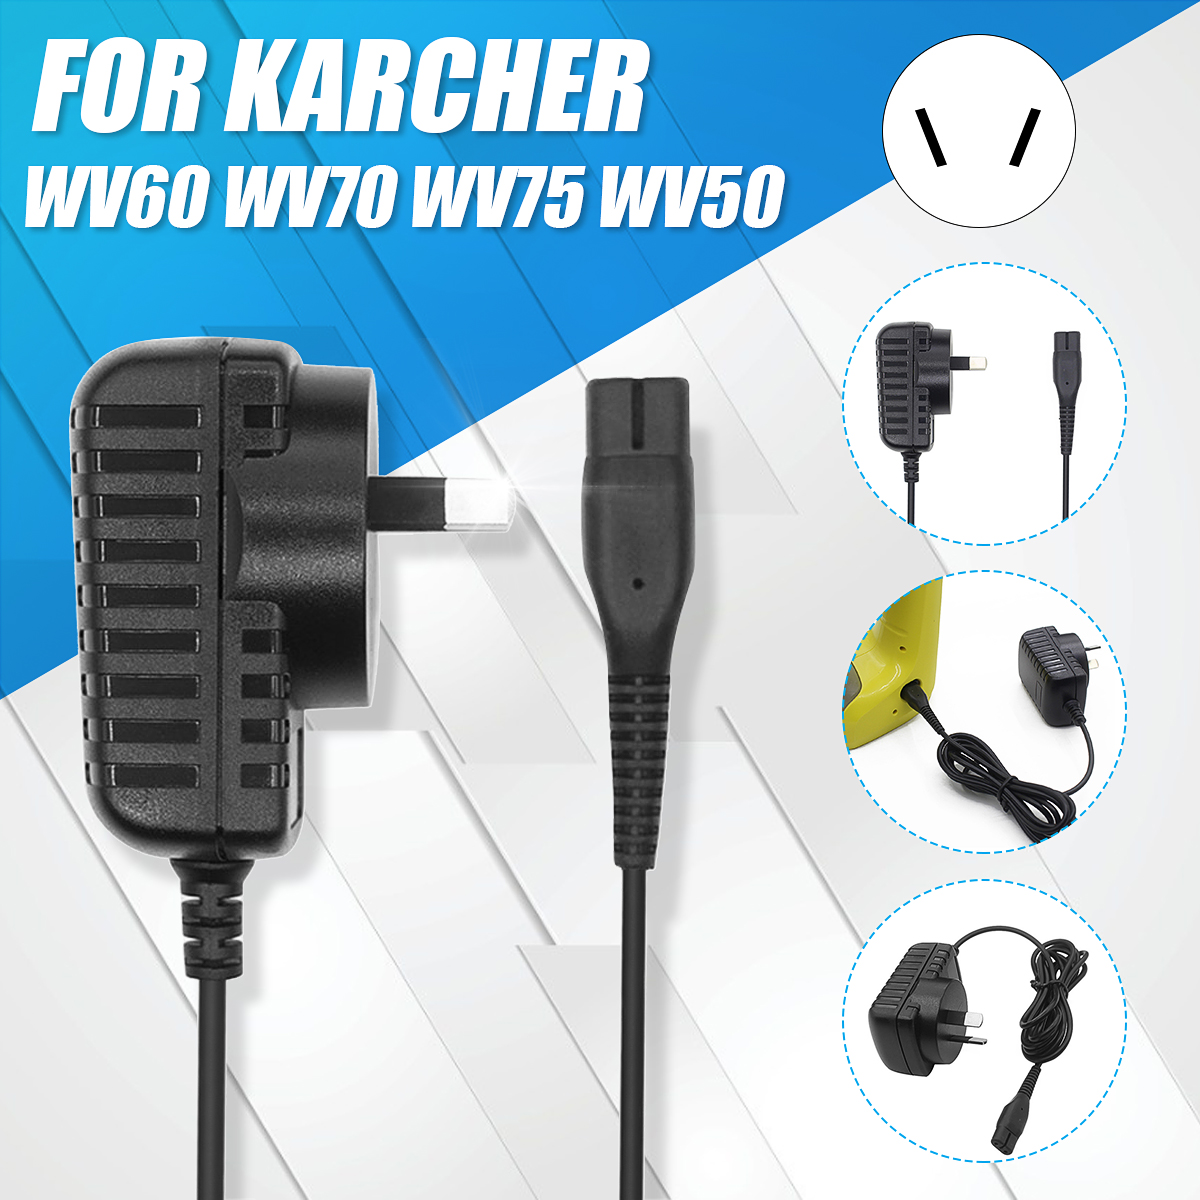 100V-240V-Power-Charger-for-Karcher-WV60-WV70-WV75-WV50-Window-Glass-Vacuum-Cleaner-1641157-1